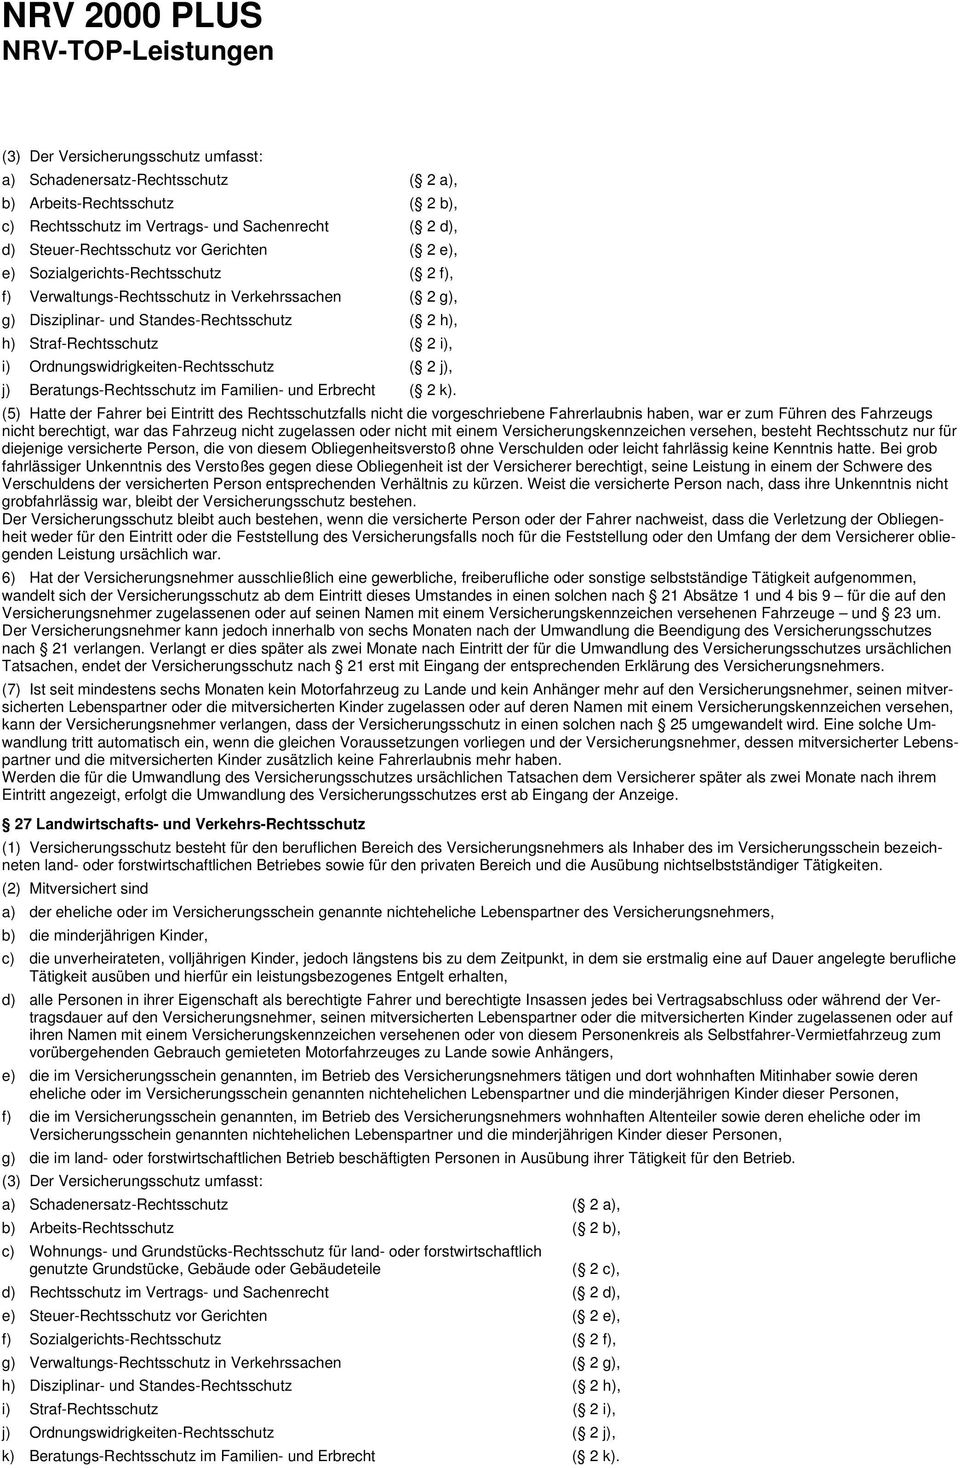 Ordnungswidrigkeiten-Rechtsschutz ( 2 j), j) Beratungs-Rechtsschutz im Familien- und Erbrecht ( 2 k).